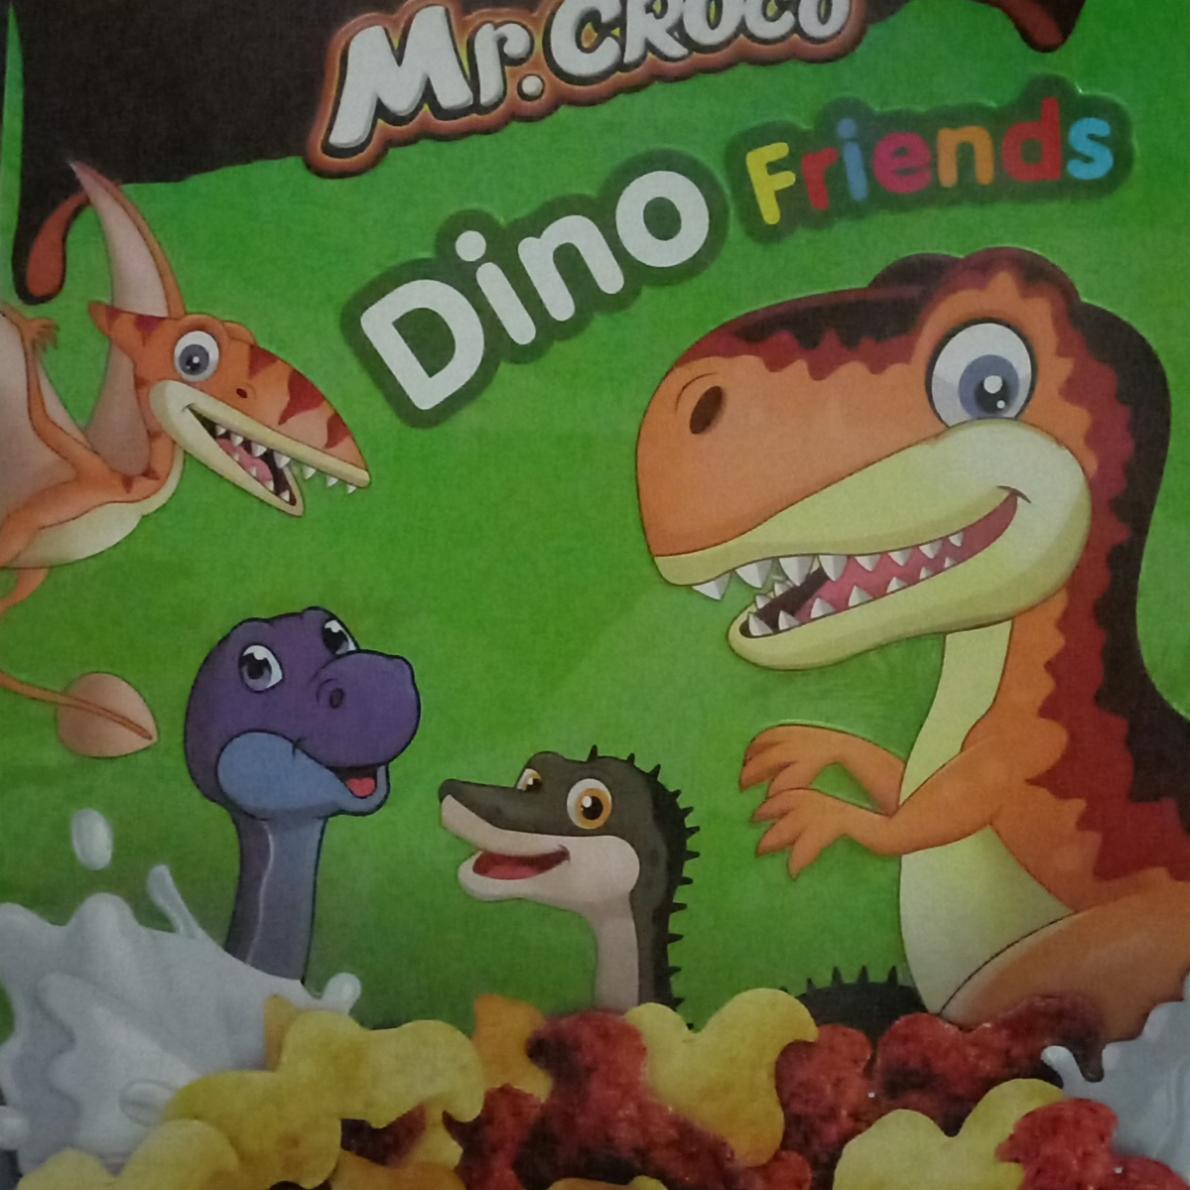 Фото - Кукурузные фигурки Динозаврики микс с какао и молоком Mr.croco Dino friends